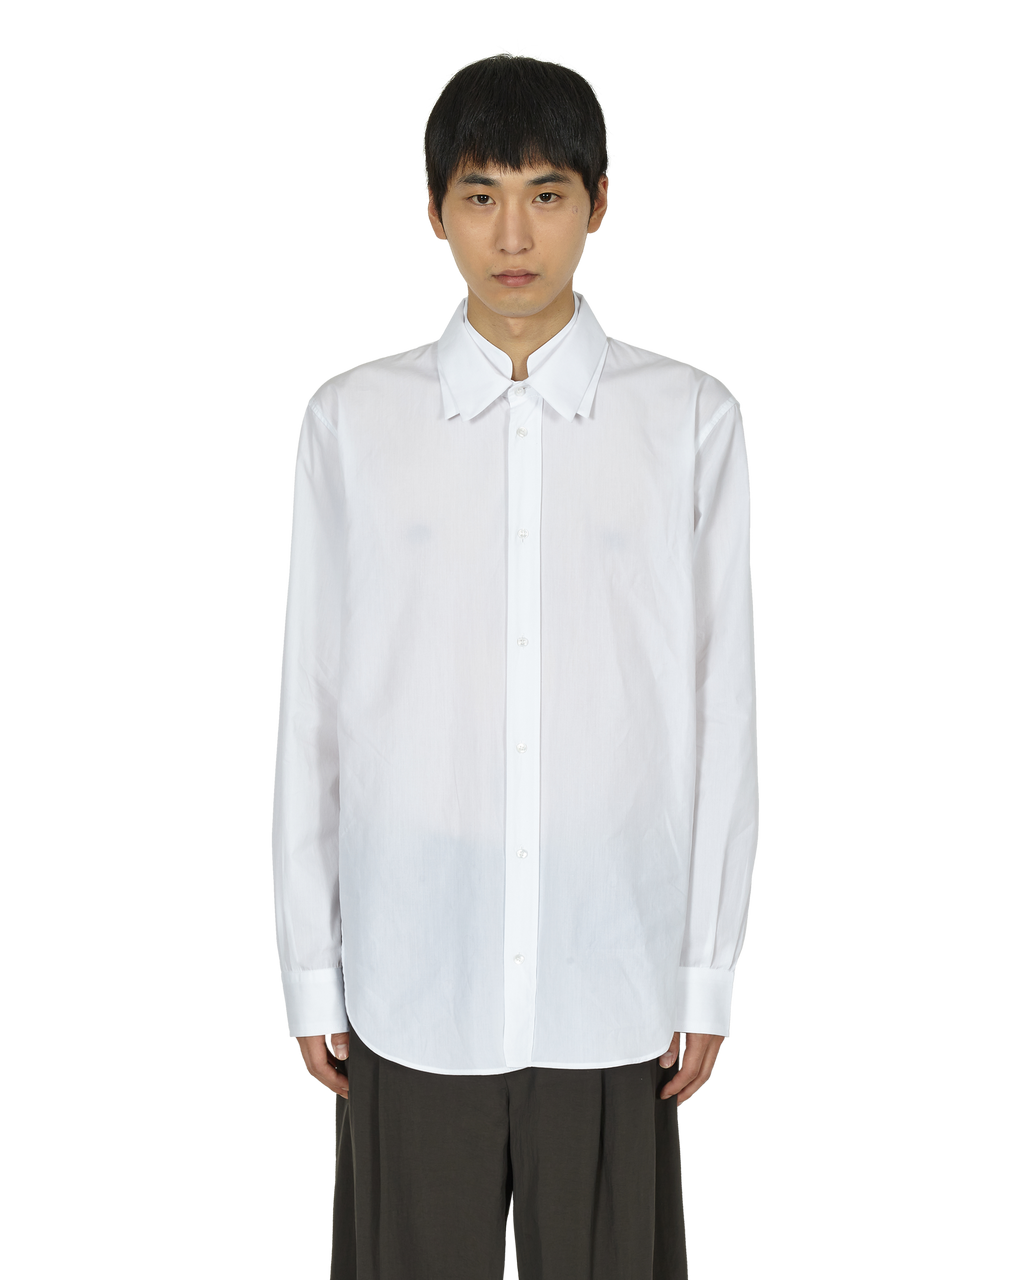 _J.L - A.L_ Triple Collar Shirt J278598-S-White front